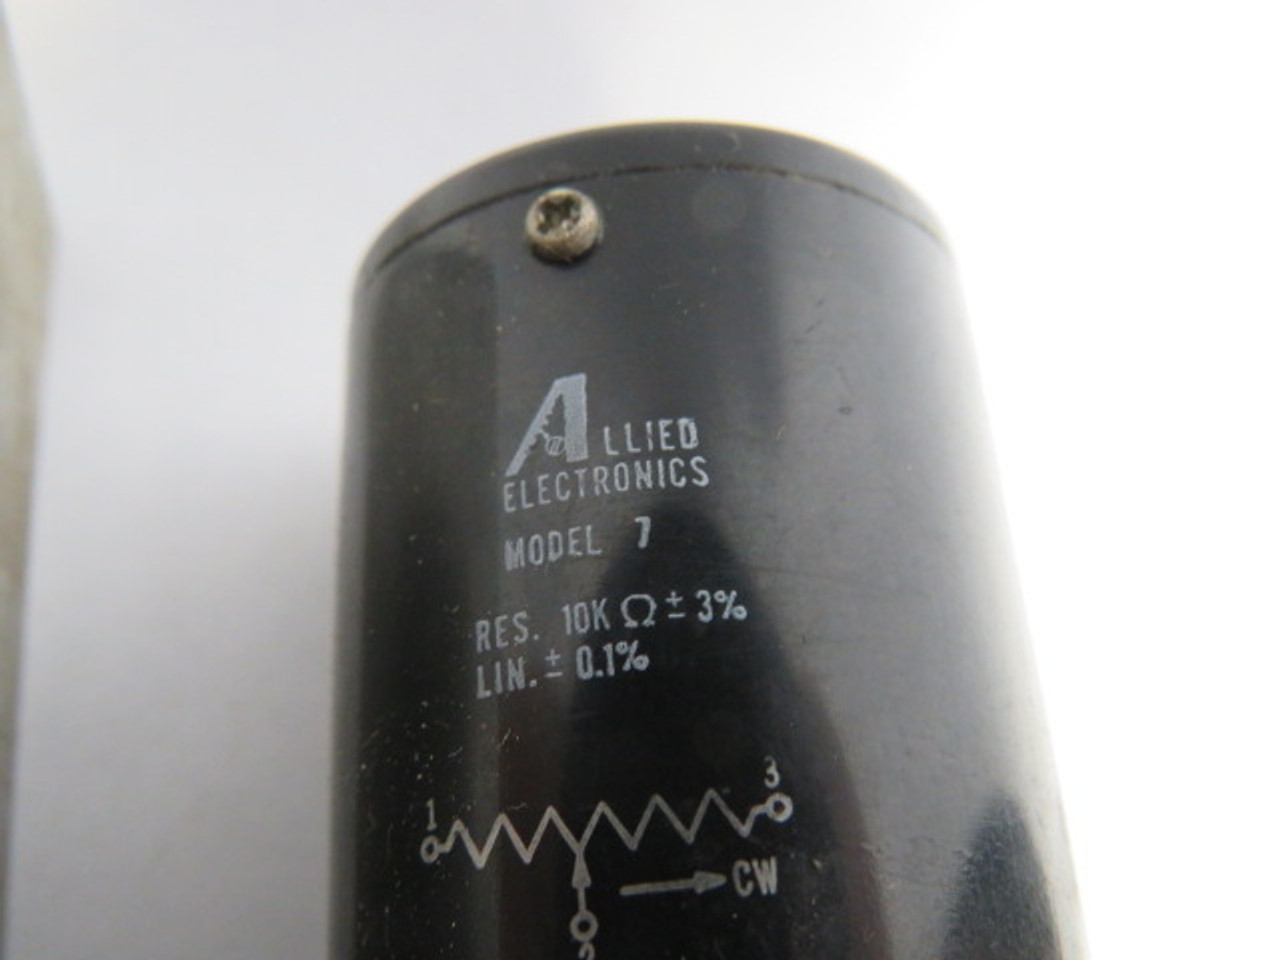 Allied Electronics Model 7 Potentiometer w/Bracket 10K Ohms 3% USED